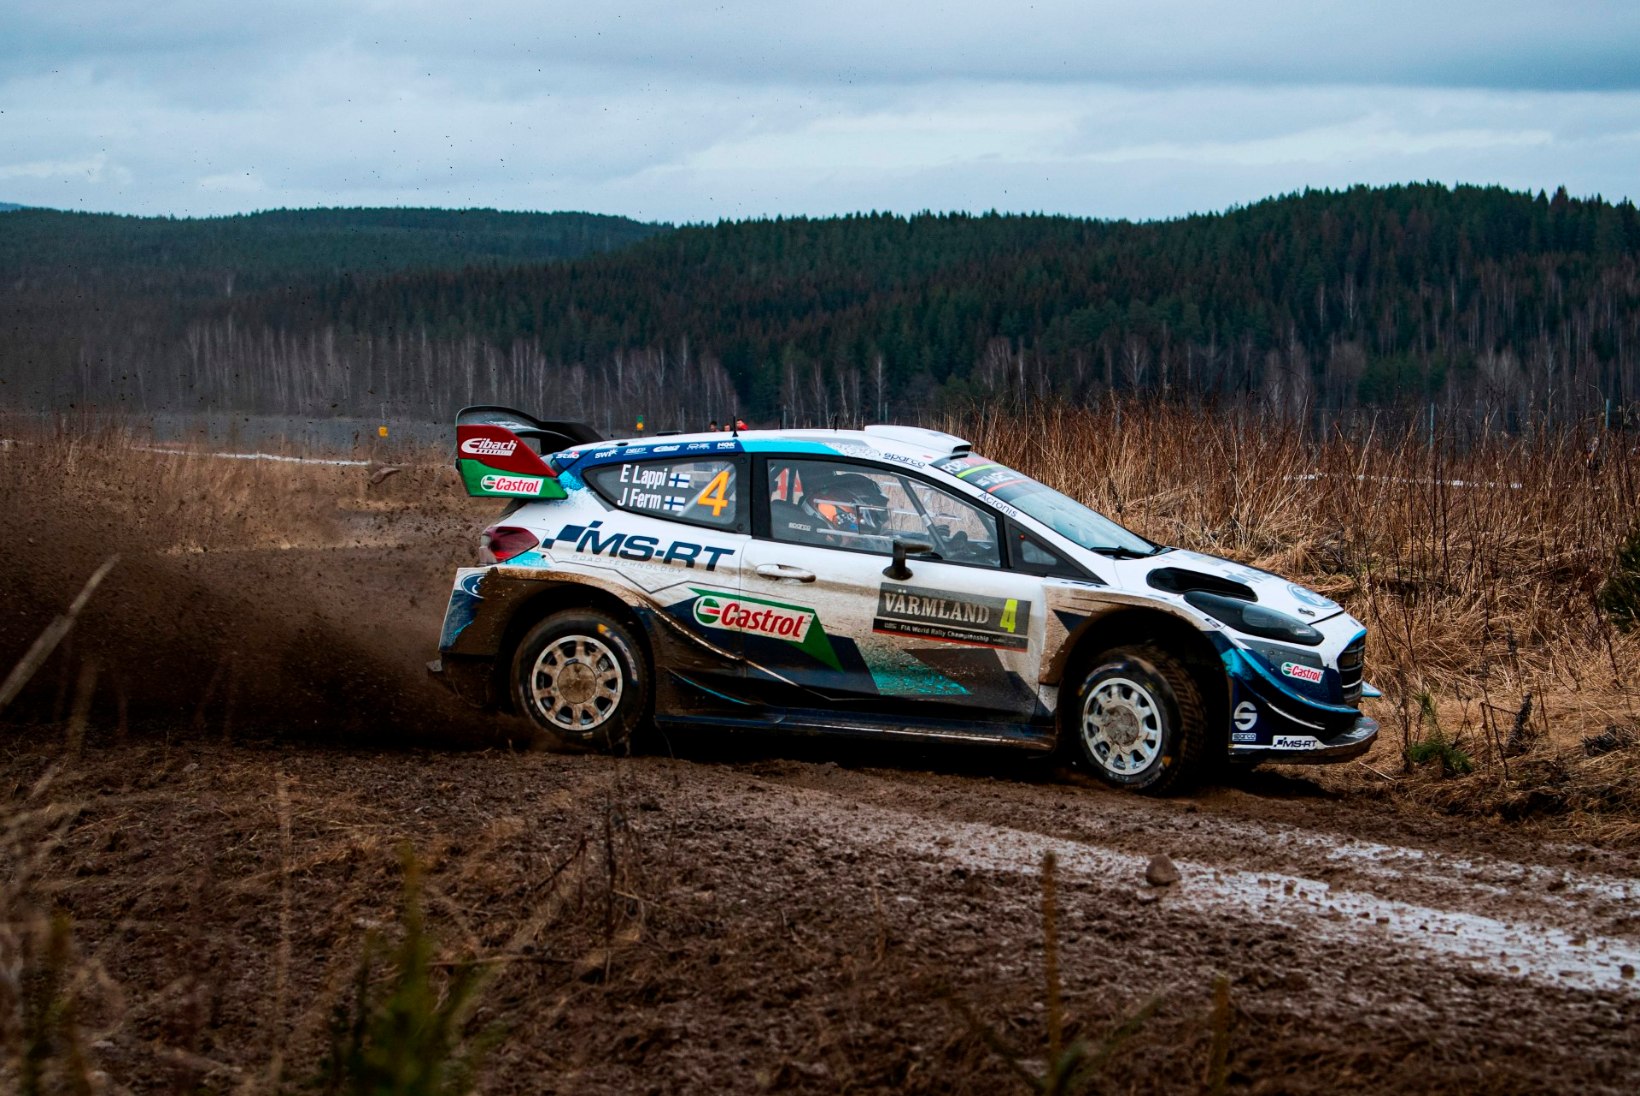 Mõtteharjutus WRC tiimijuhtidele: kui saaksite teisest tiimist ühe sõitja napsata, siis kelle?